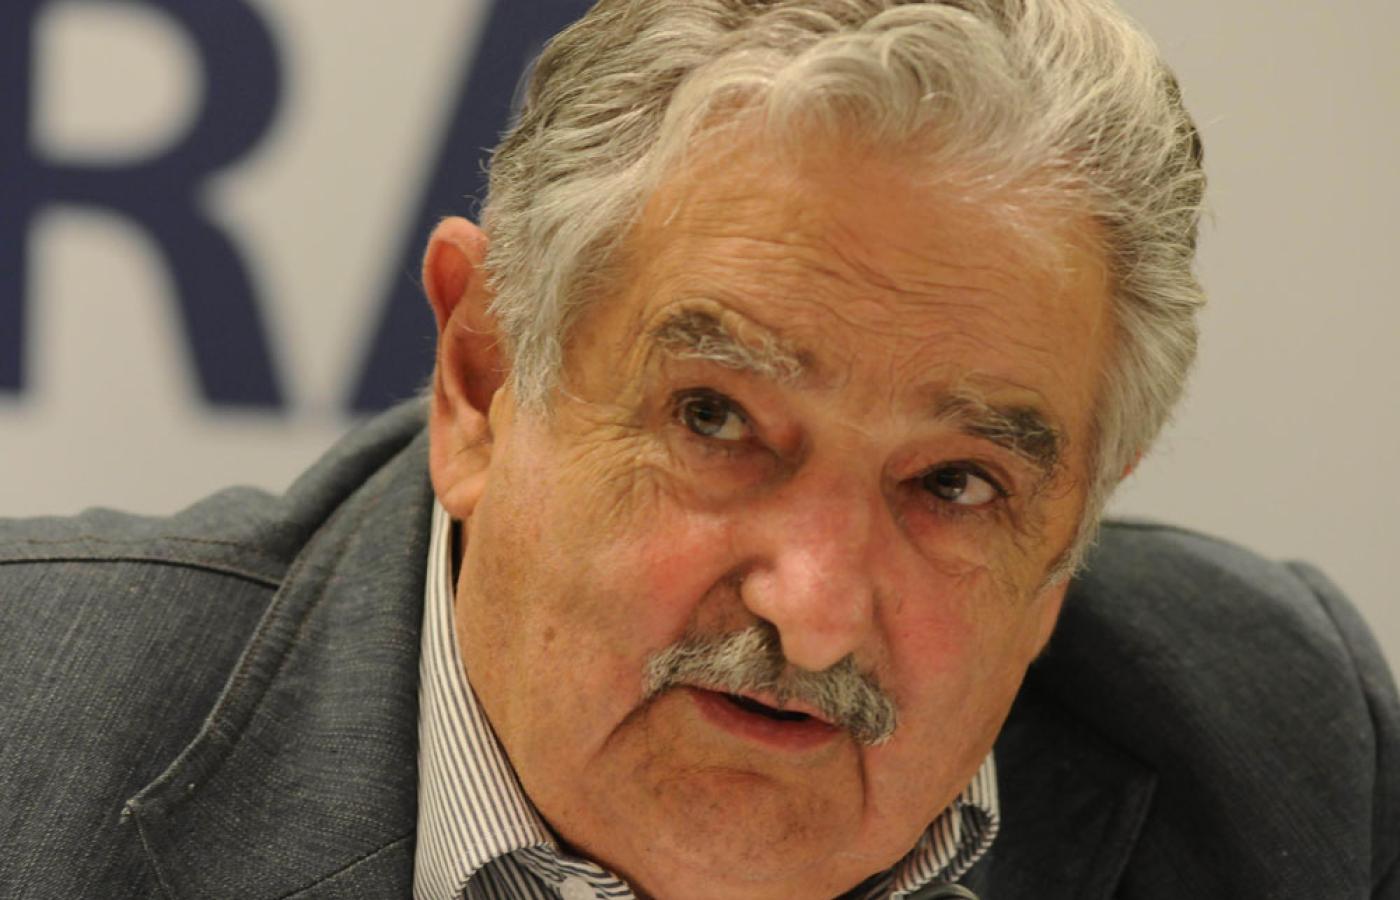 José Mujica: od terrorysty do prezydenta